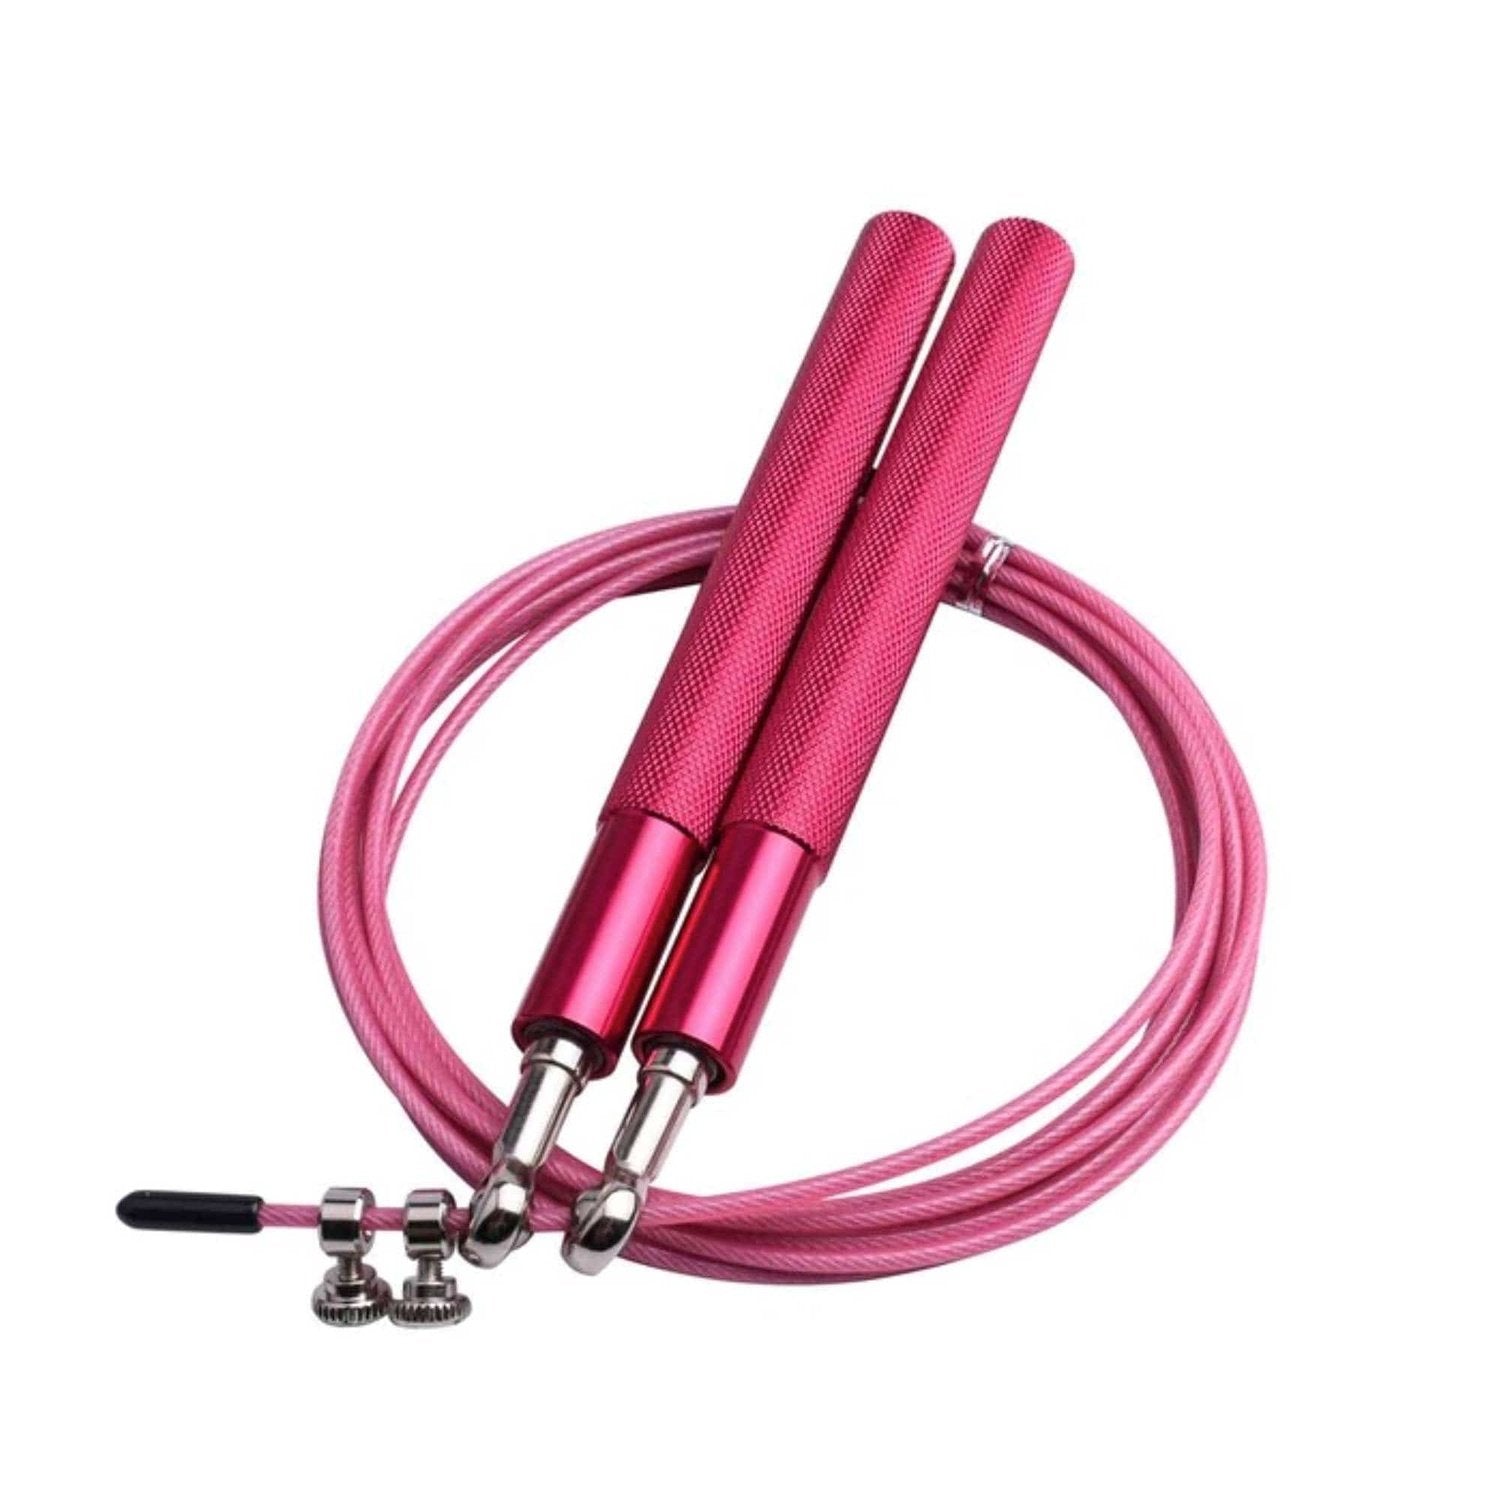 HighPowered Light Aluminium Jump Rope (Einsteigerspringseil) Pink kaufen bei HighPowered.ch